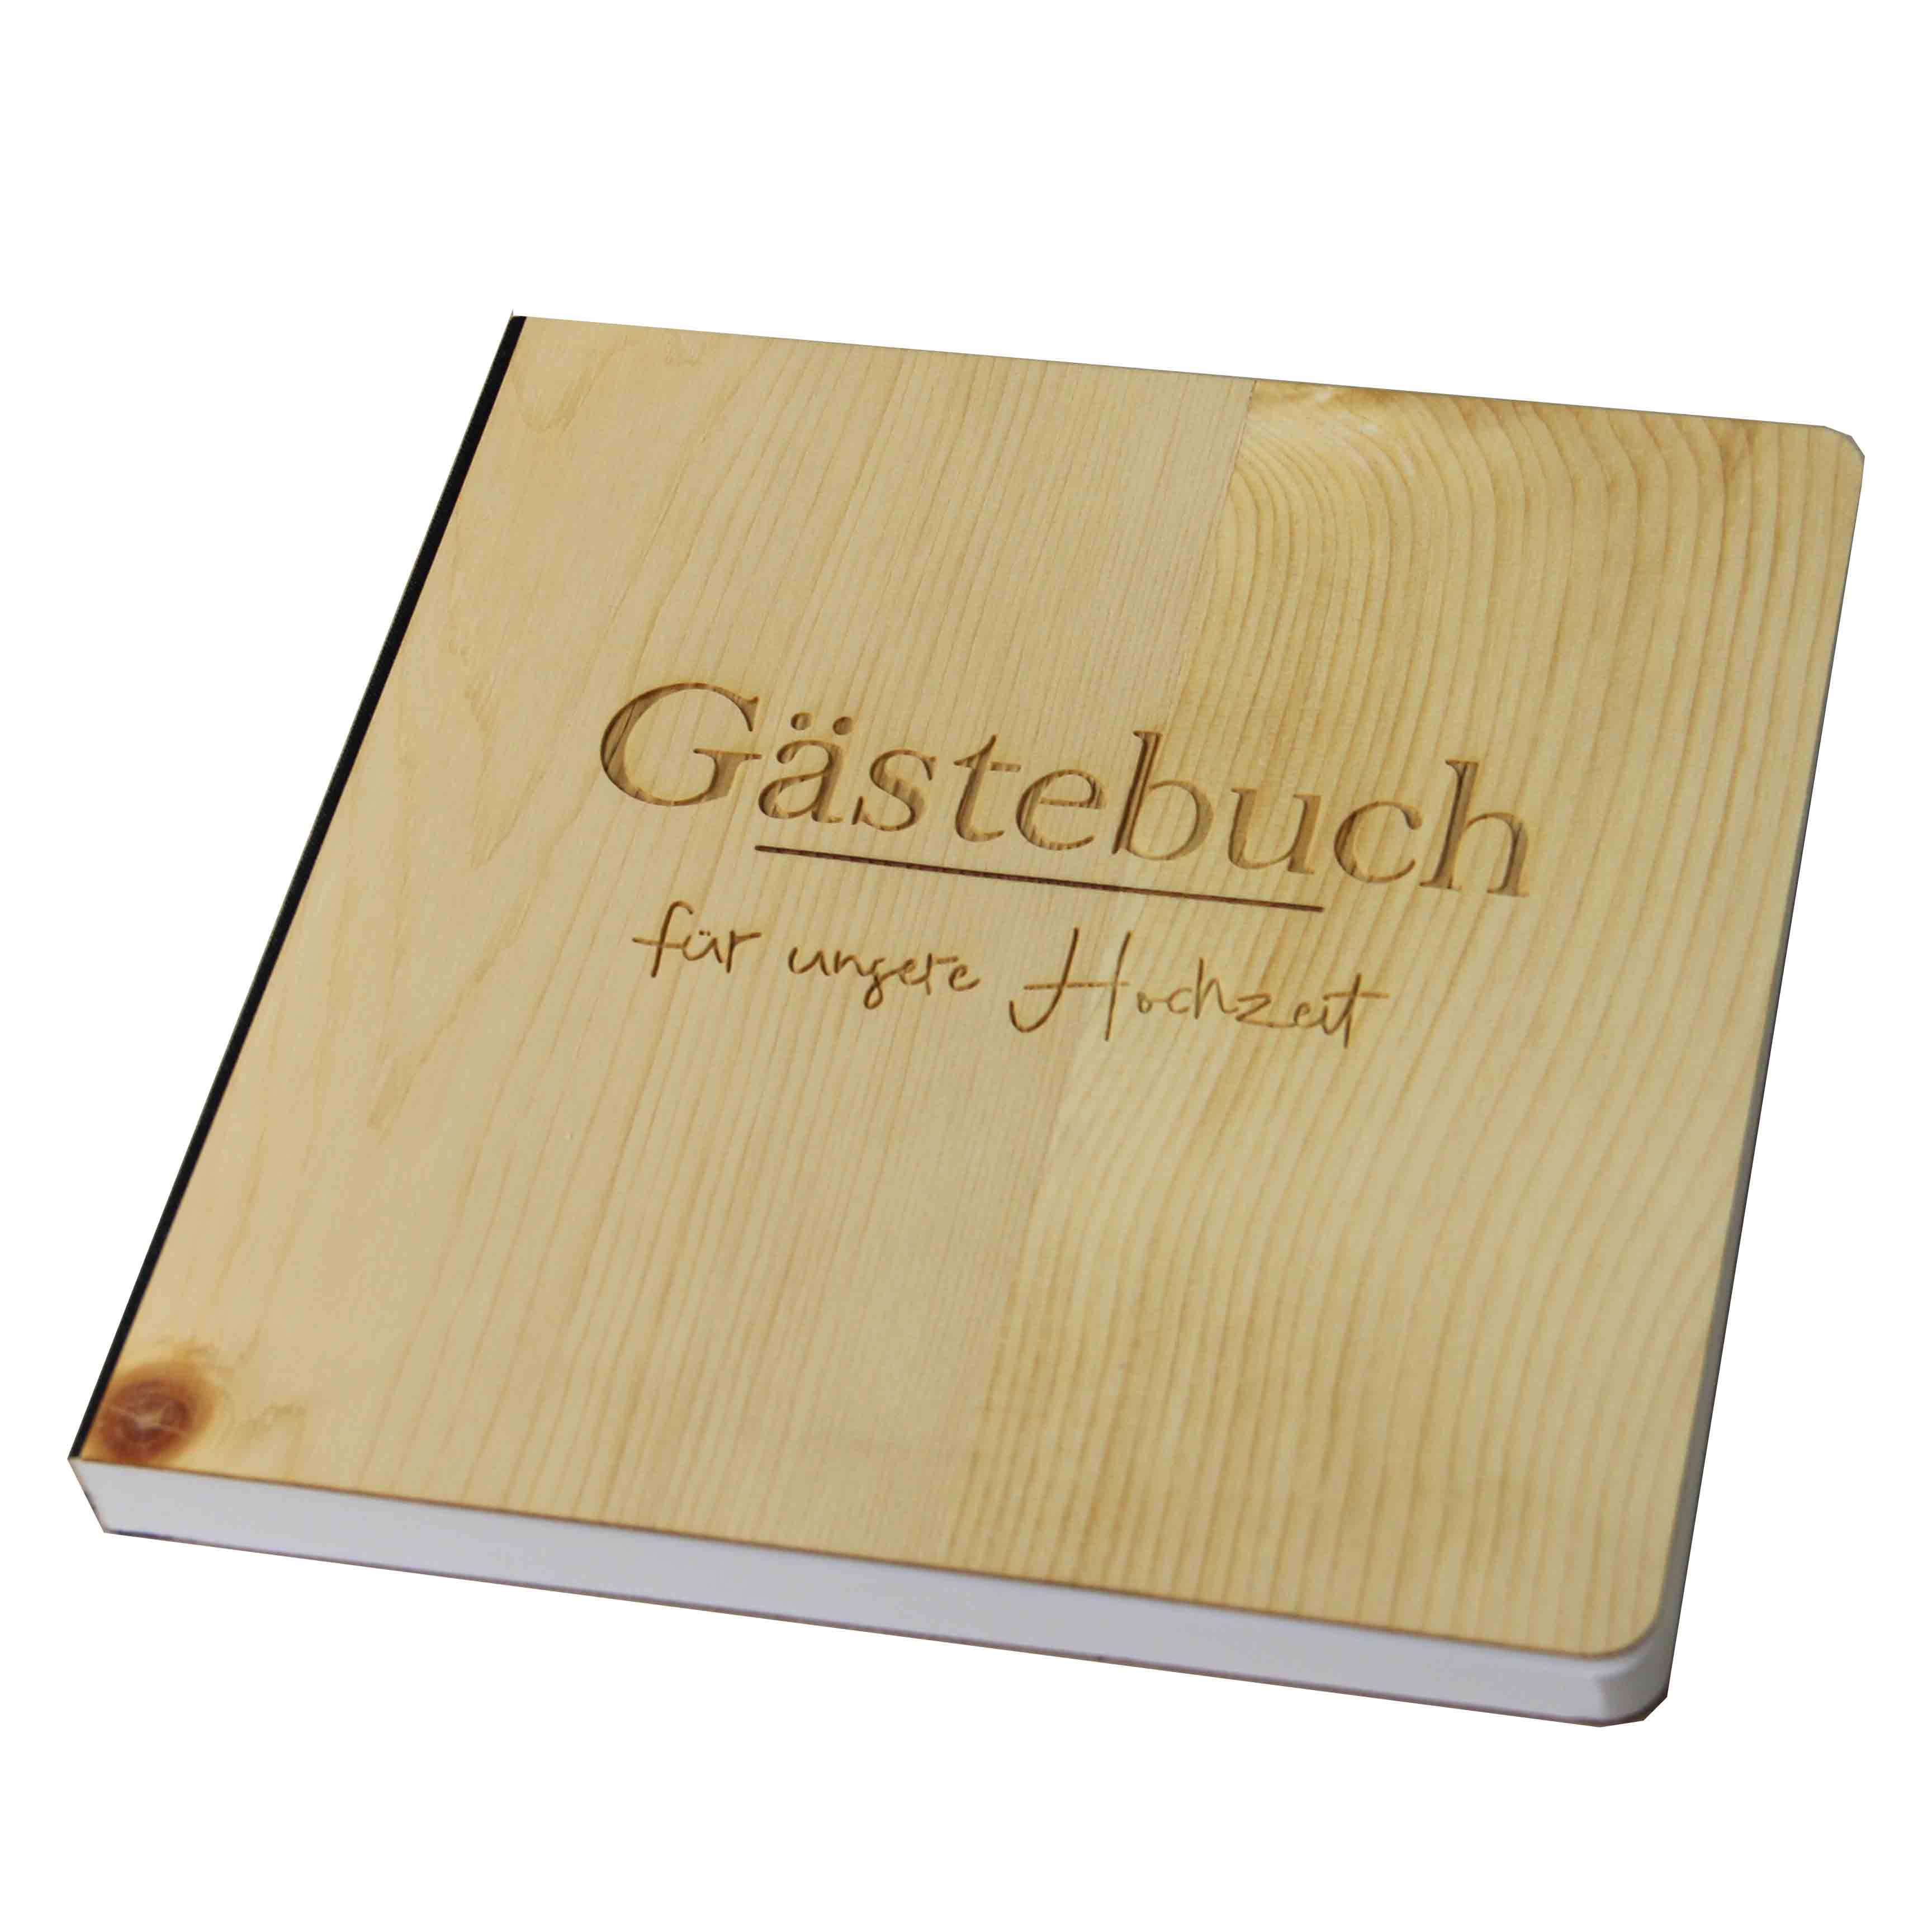 Holzgrusskarten - Gästebuch aus Zirbe  "Für unsere Hochzeit"